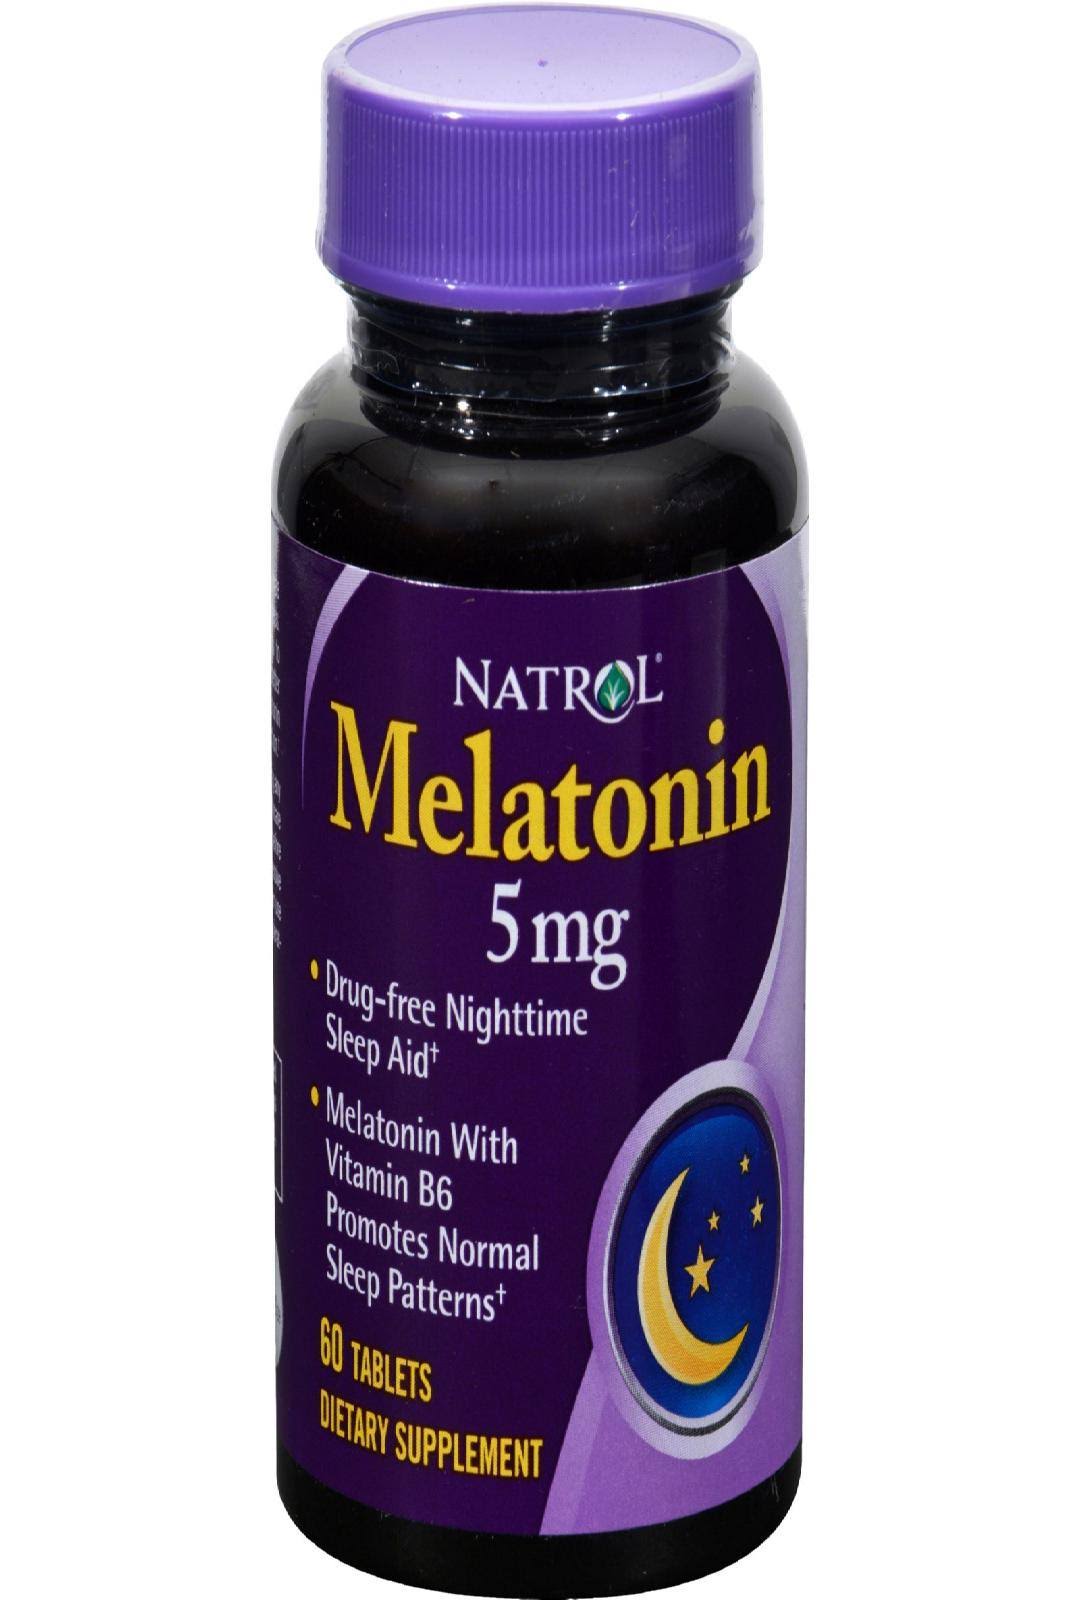 Natrol Melatonin - 5mg, 60 Tablets